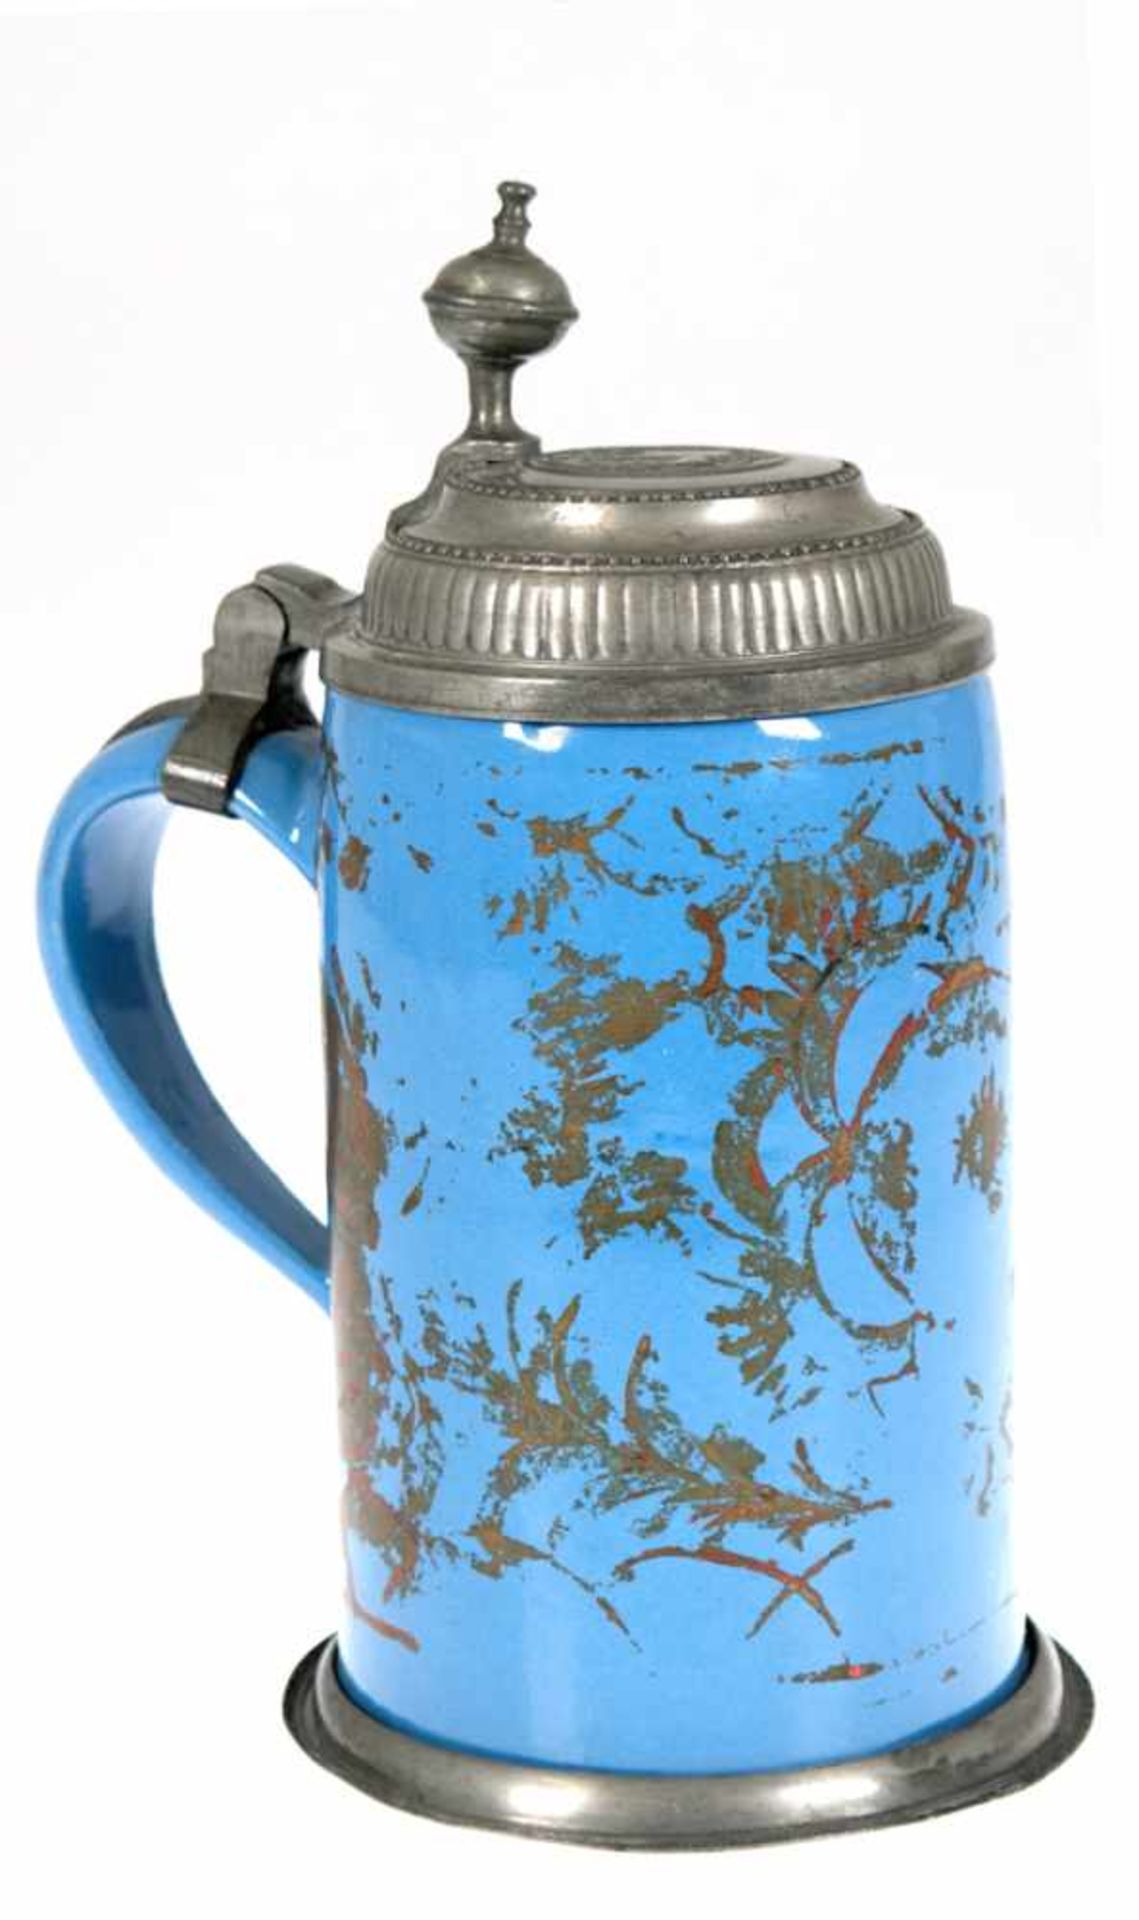 Walzenkrug, wohl Schrezheim 19. Jh., Korpus mit hellblauer Glasur, floraleAufglasurmalerei in - Bild 2 aus 3